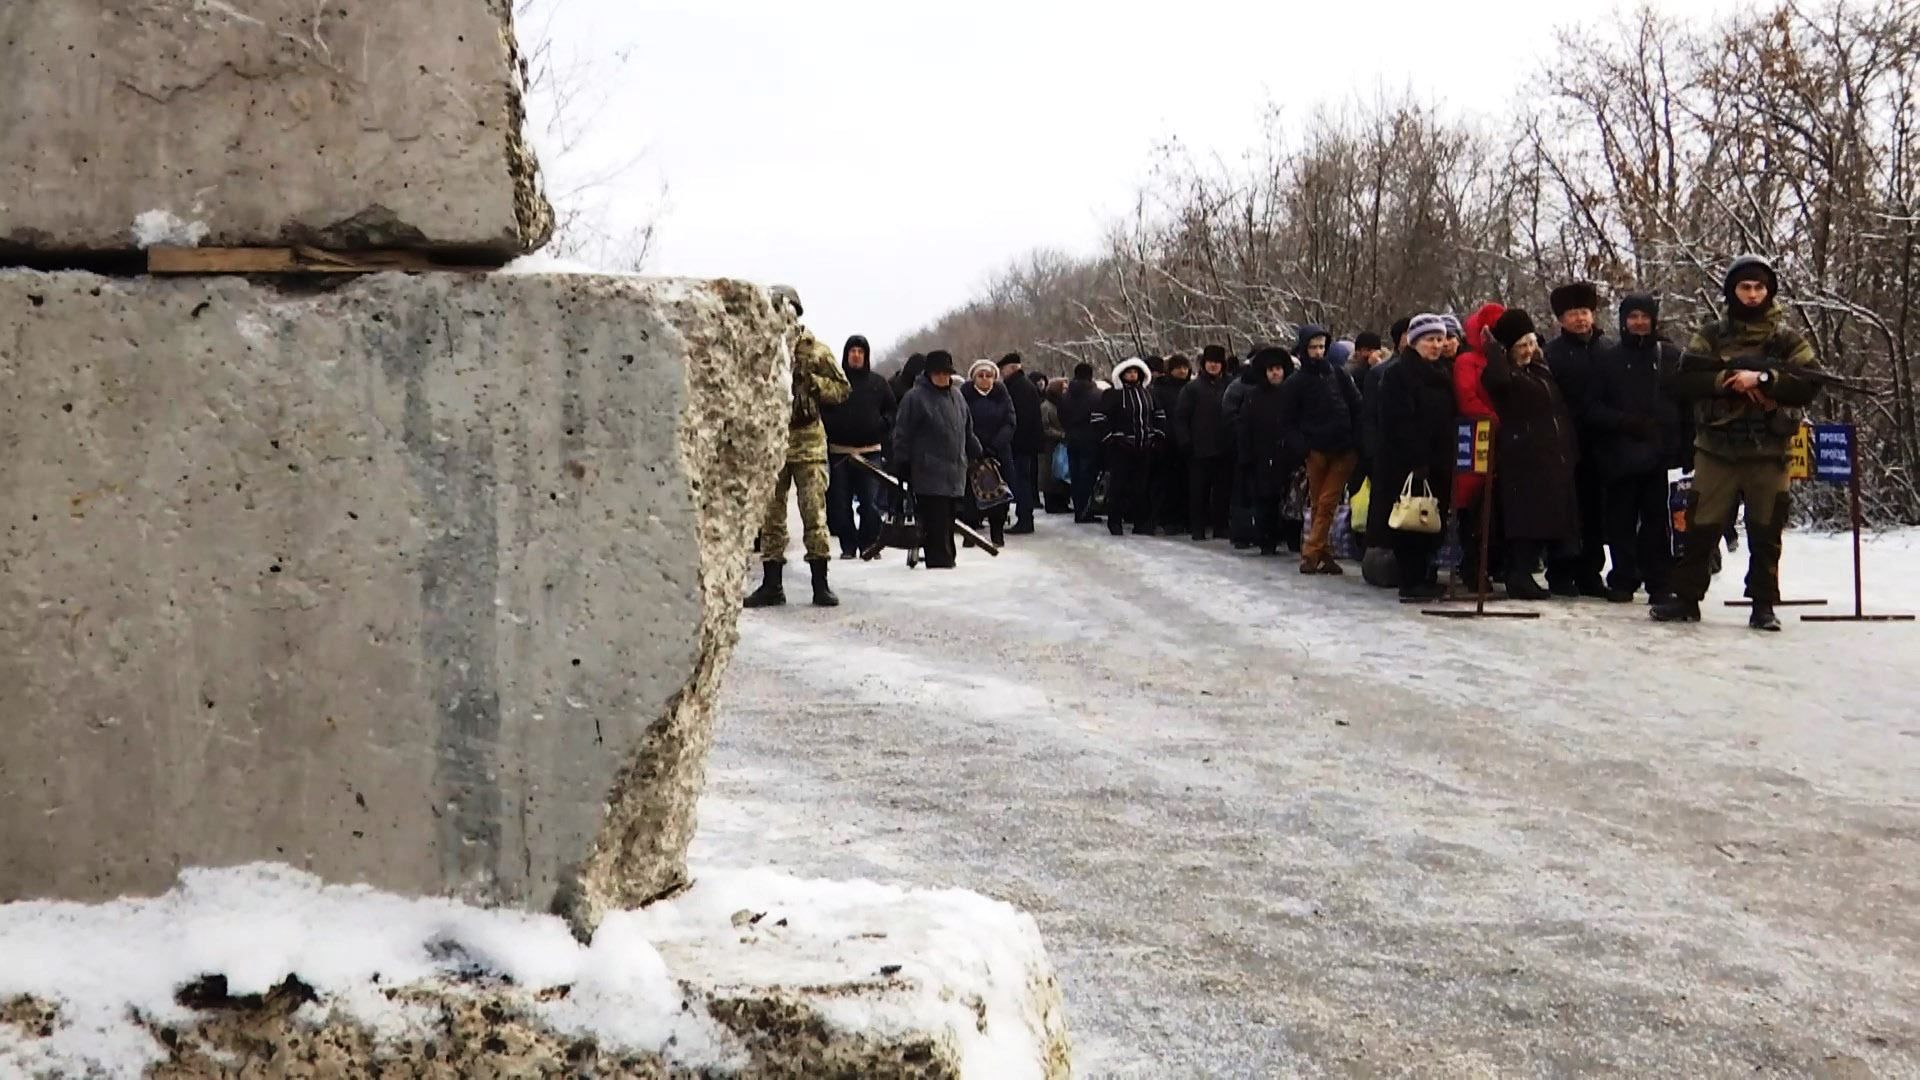 Гнітюча реальність: як живеться людям в окупованих Донецьку та Луганську